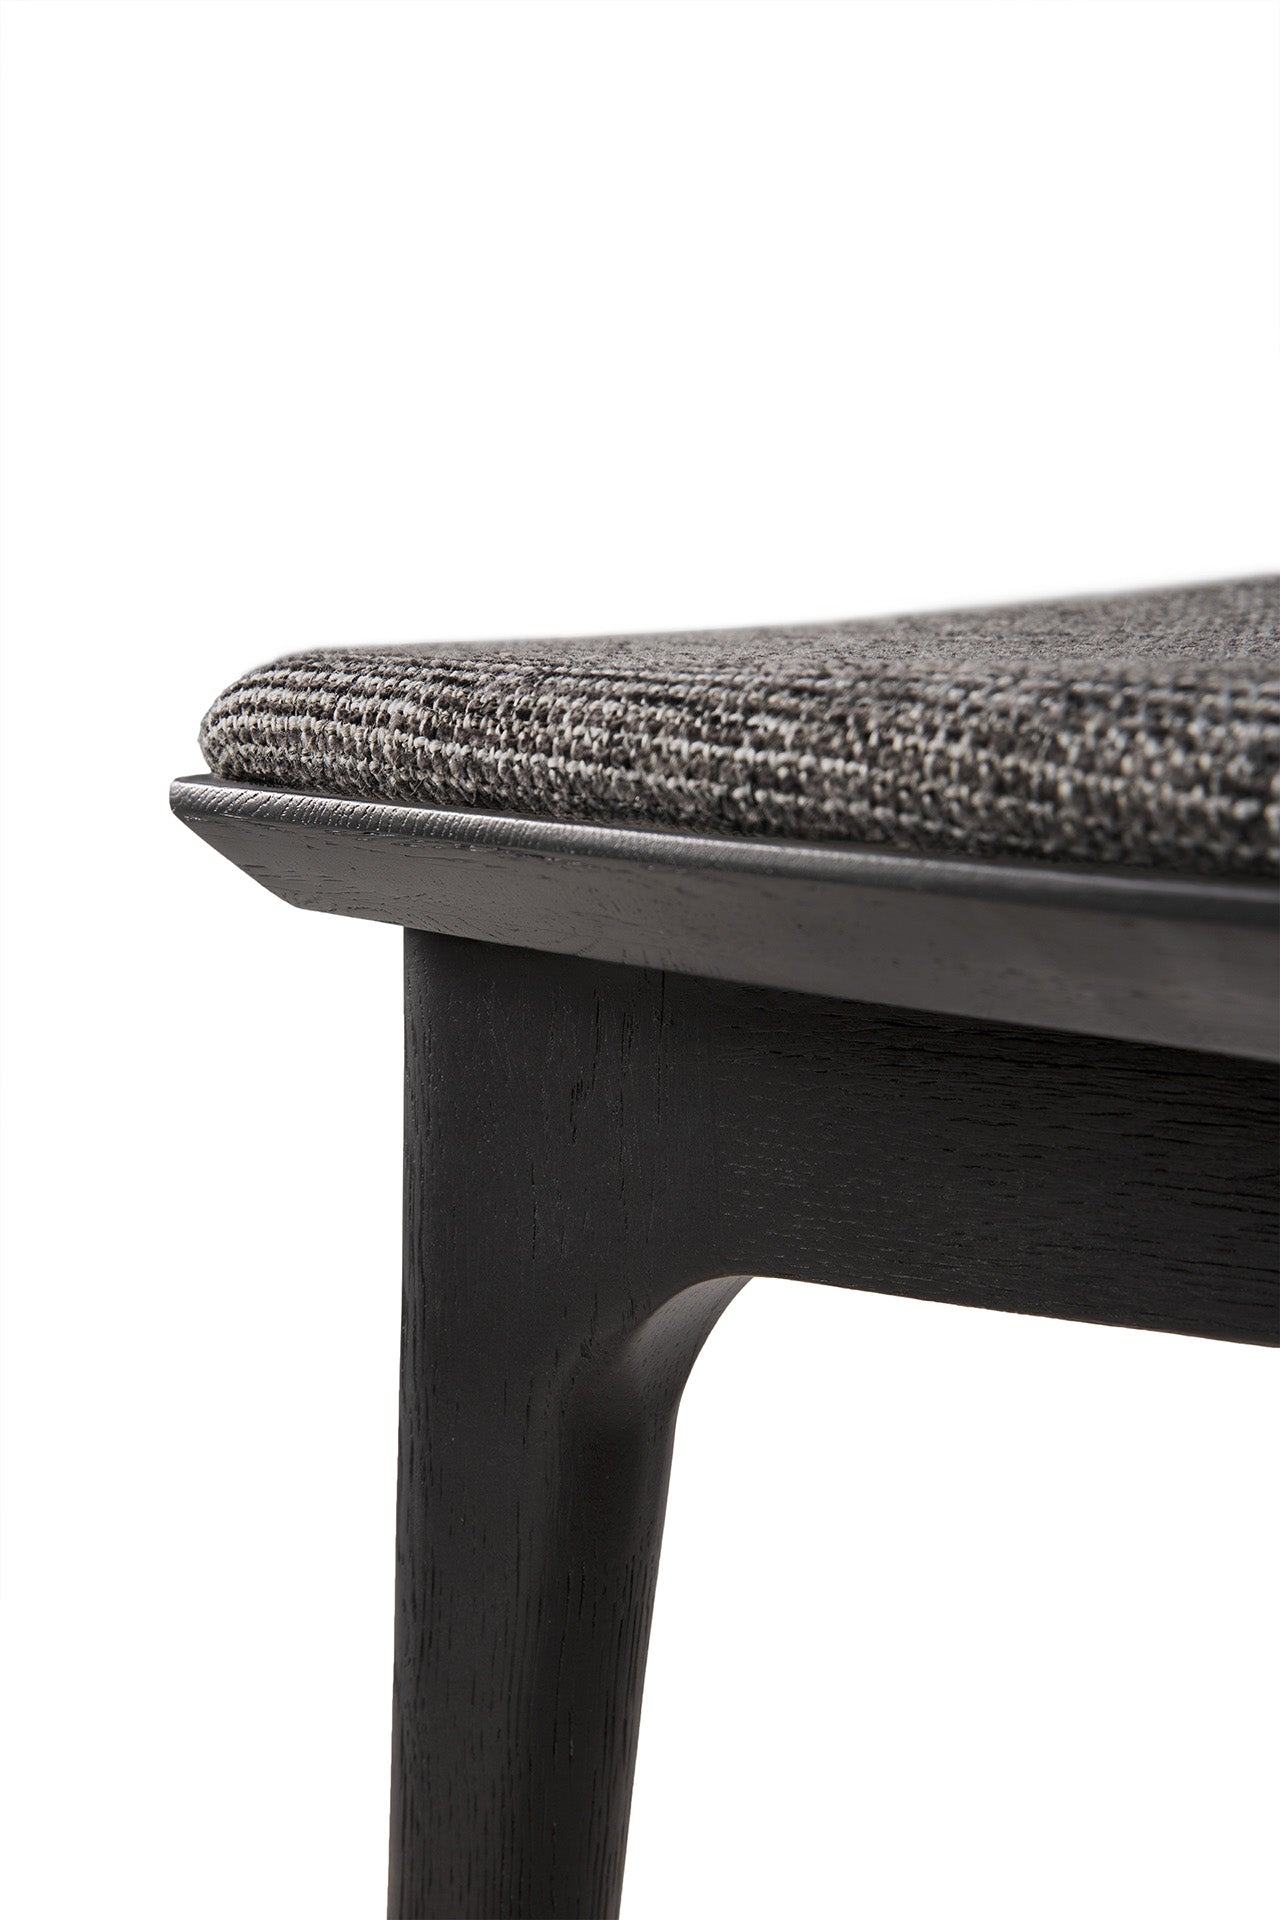 Bok Dining Chair by Alain Van Havre | Oak Black | Grey Uhpolstery